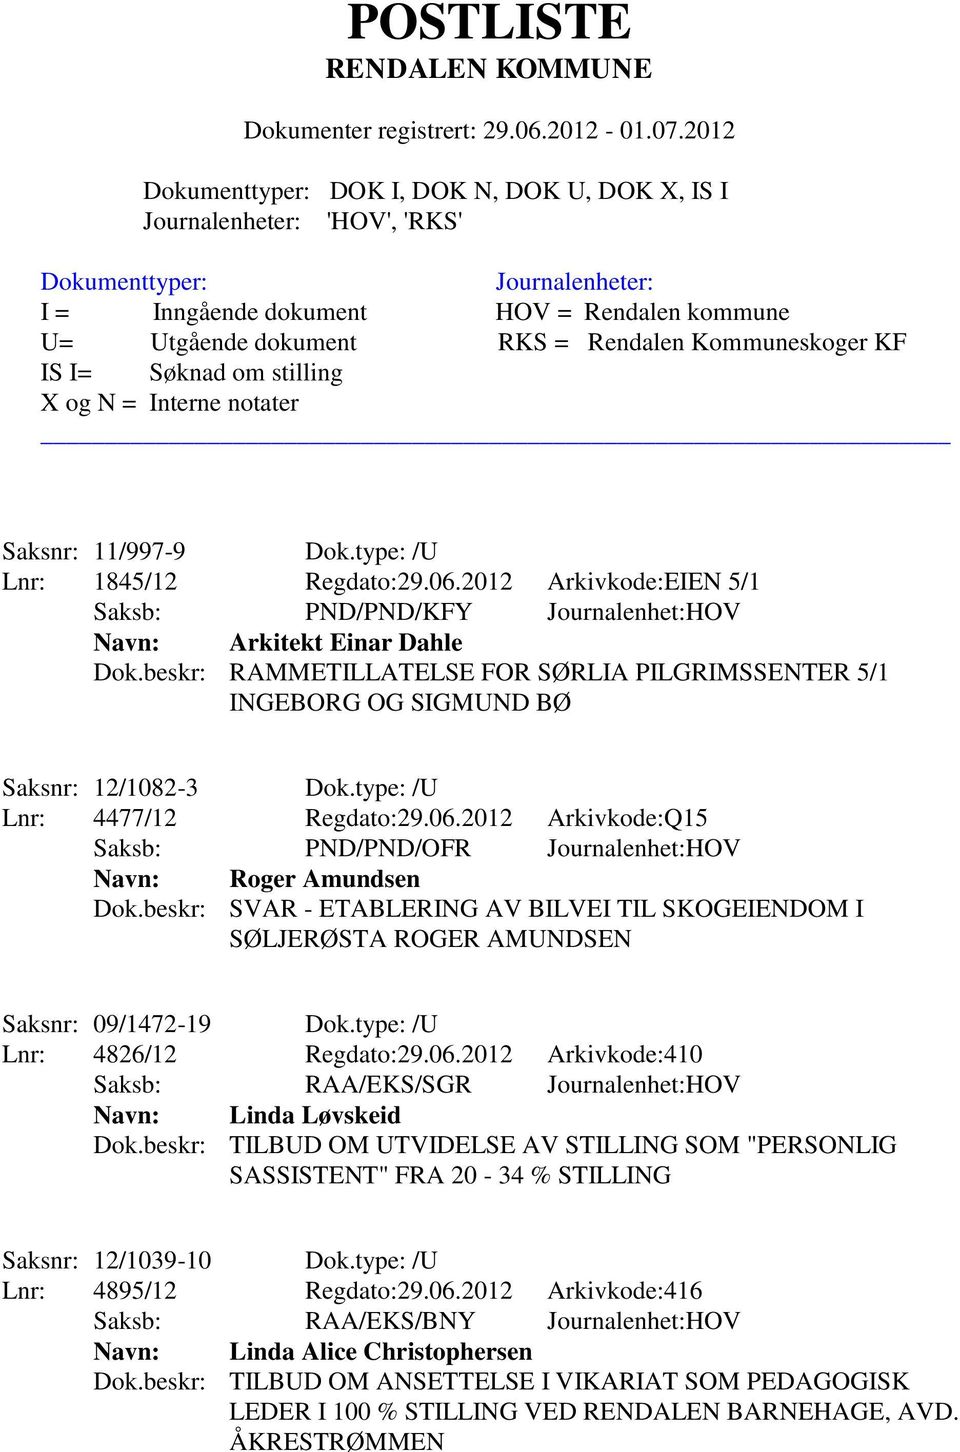 2012 Arkivkode:Q15 Saksb: PND/PND/OFR Journalenhet:HOV Navn: Roger Amundsen Dok.beskr: SVAR - ETABLERING AV BILVEI TIL SKOGEIENDOM I SØLJERØSTA ROGER AMUNDSEN Saksnr: 09/1472-19 Dok.